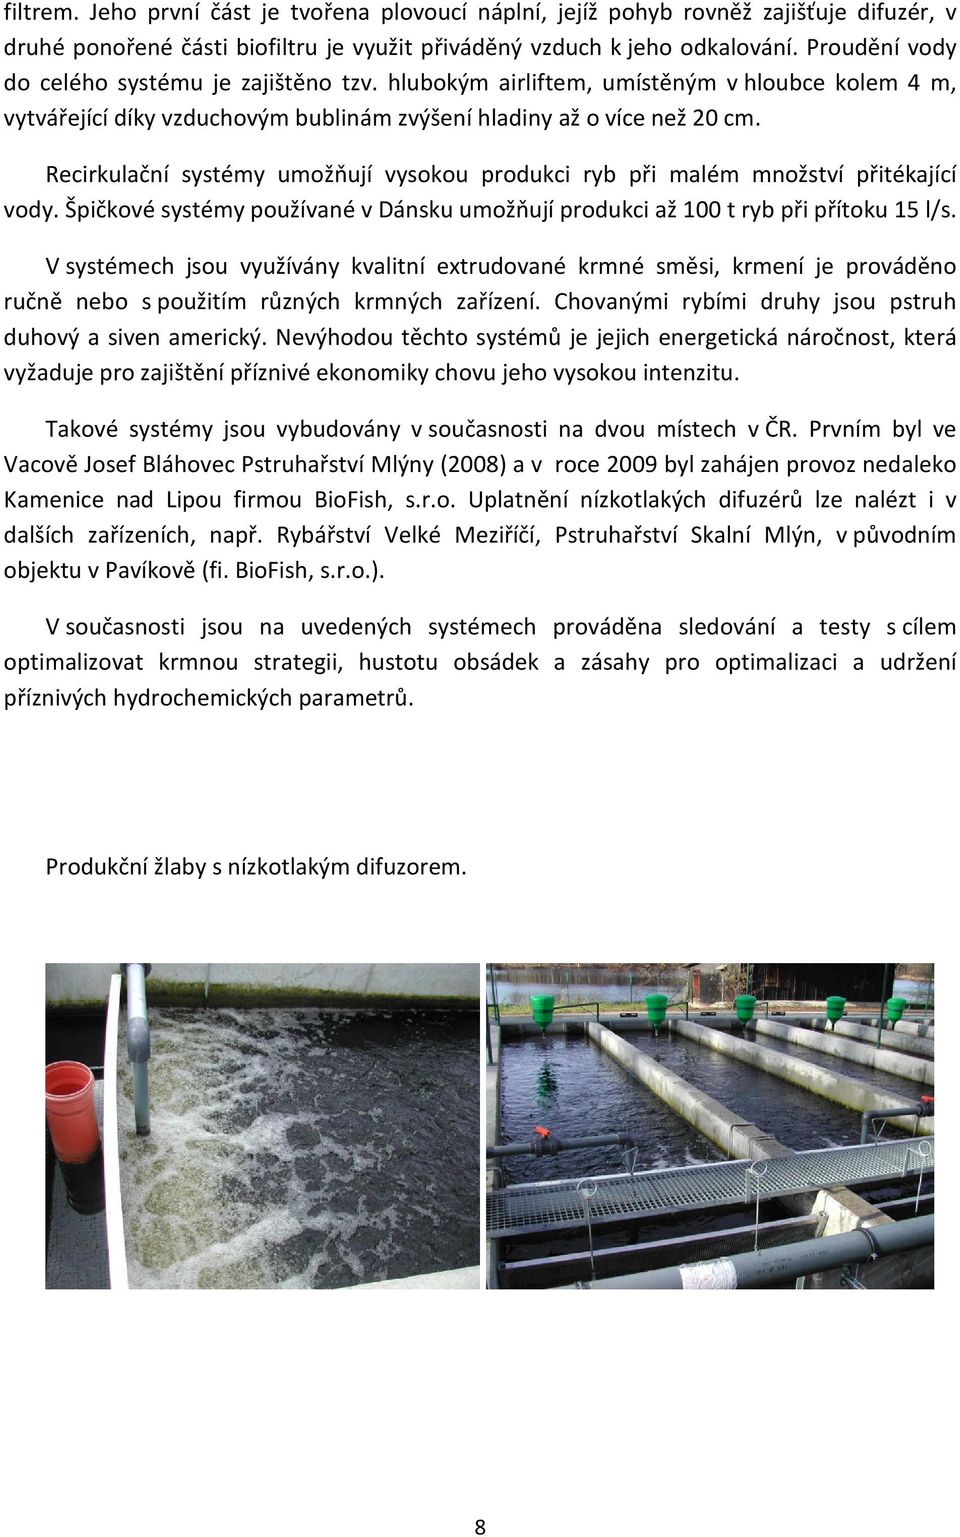 Recirkulační systémy umožňují vysokou produkci ryb při malém množství přitékající vody. Špičkové systémy používané v Dánsku umožňují produkci až 100 t ryb při přítoku 15 l/s.